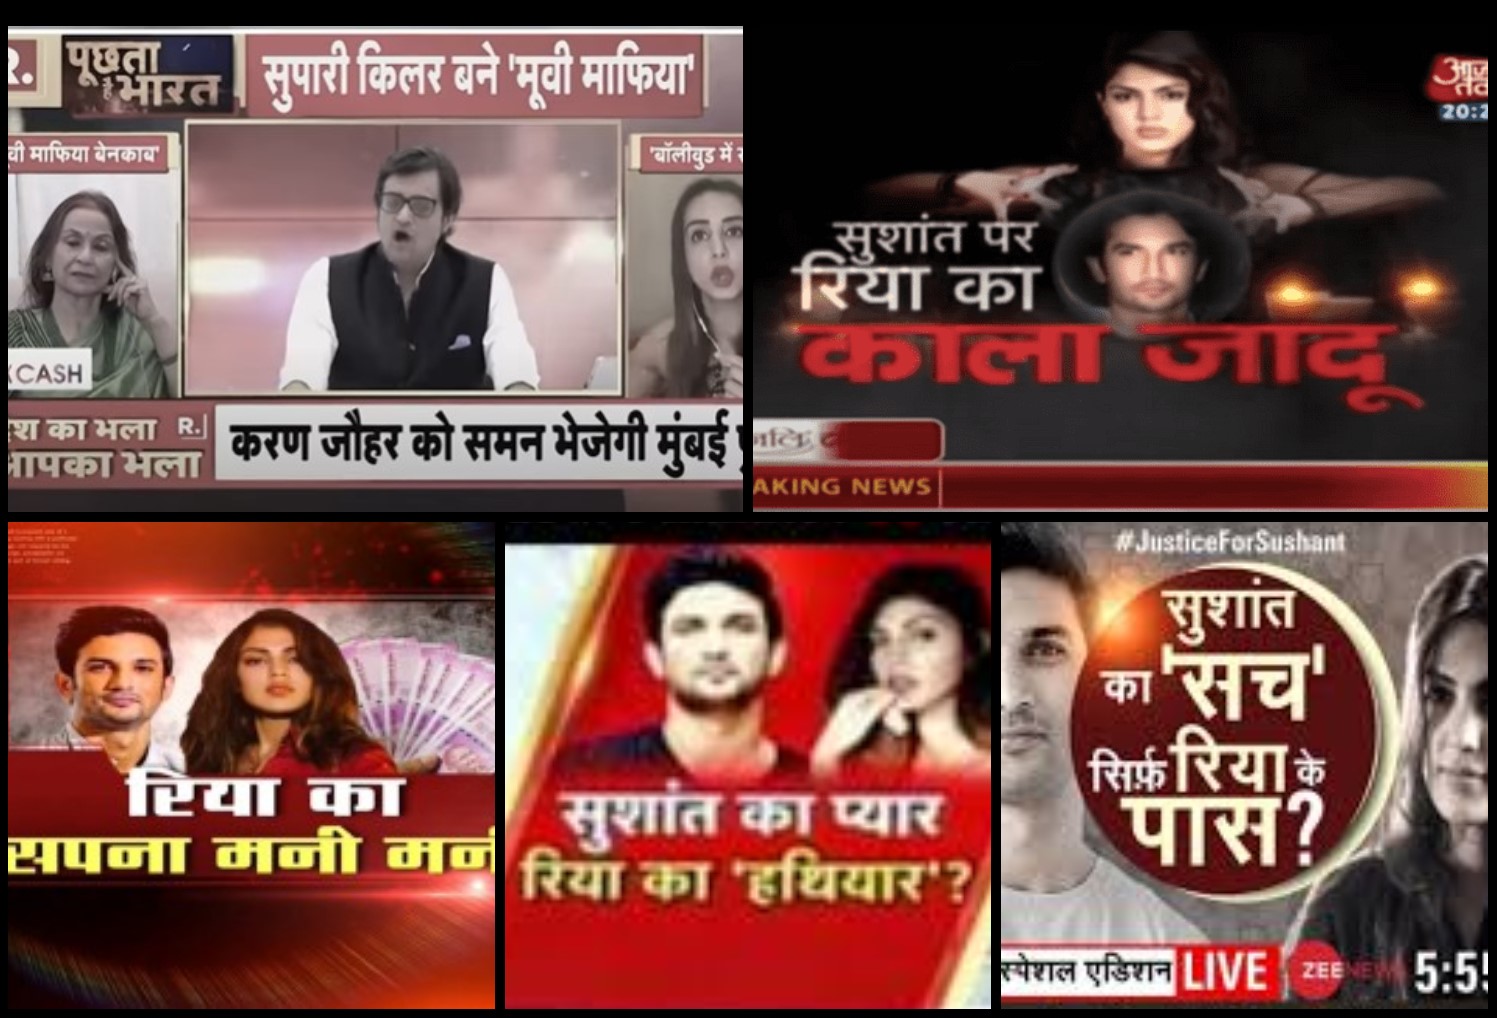 سشانت معاملے کو لےکر مختلف  ٹی وی چینلوں کی کوریج(بہ شکریہ :متعلقہ  چینل/ویڈیوگریب)